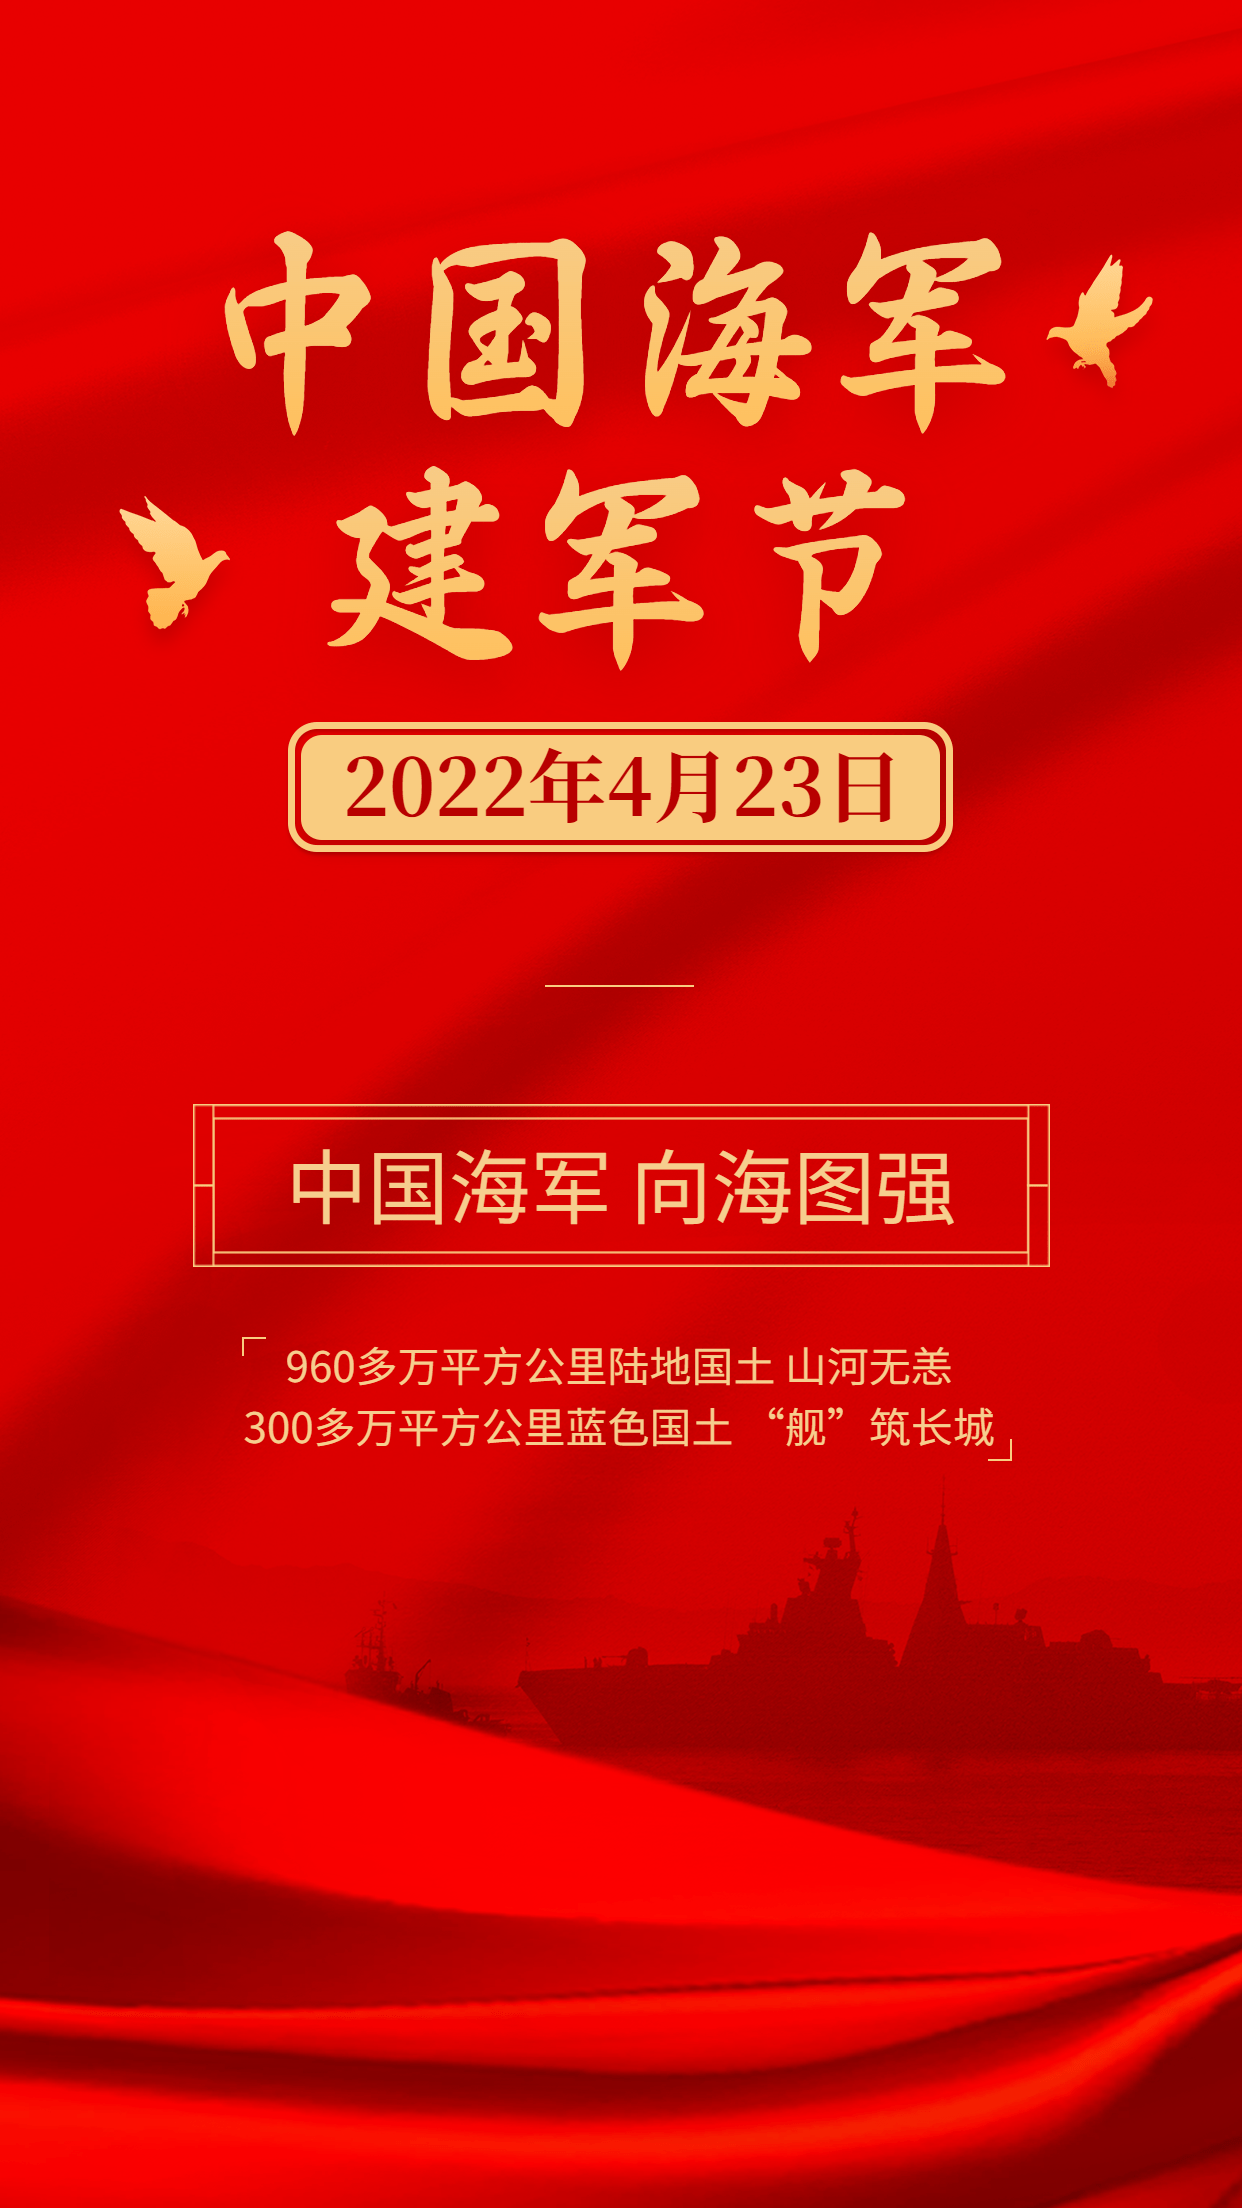 中国海军建军节节日宣传排版手机海报